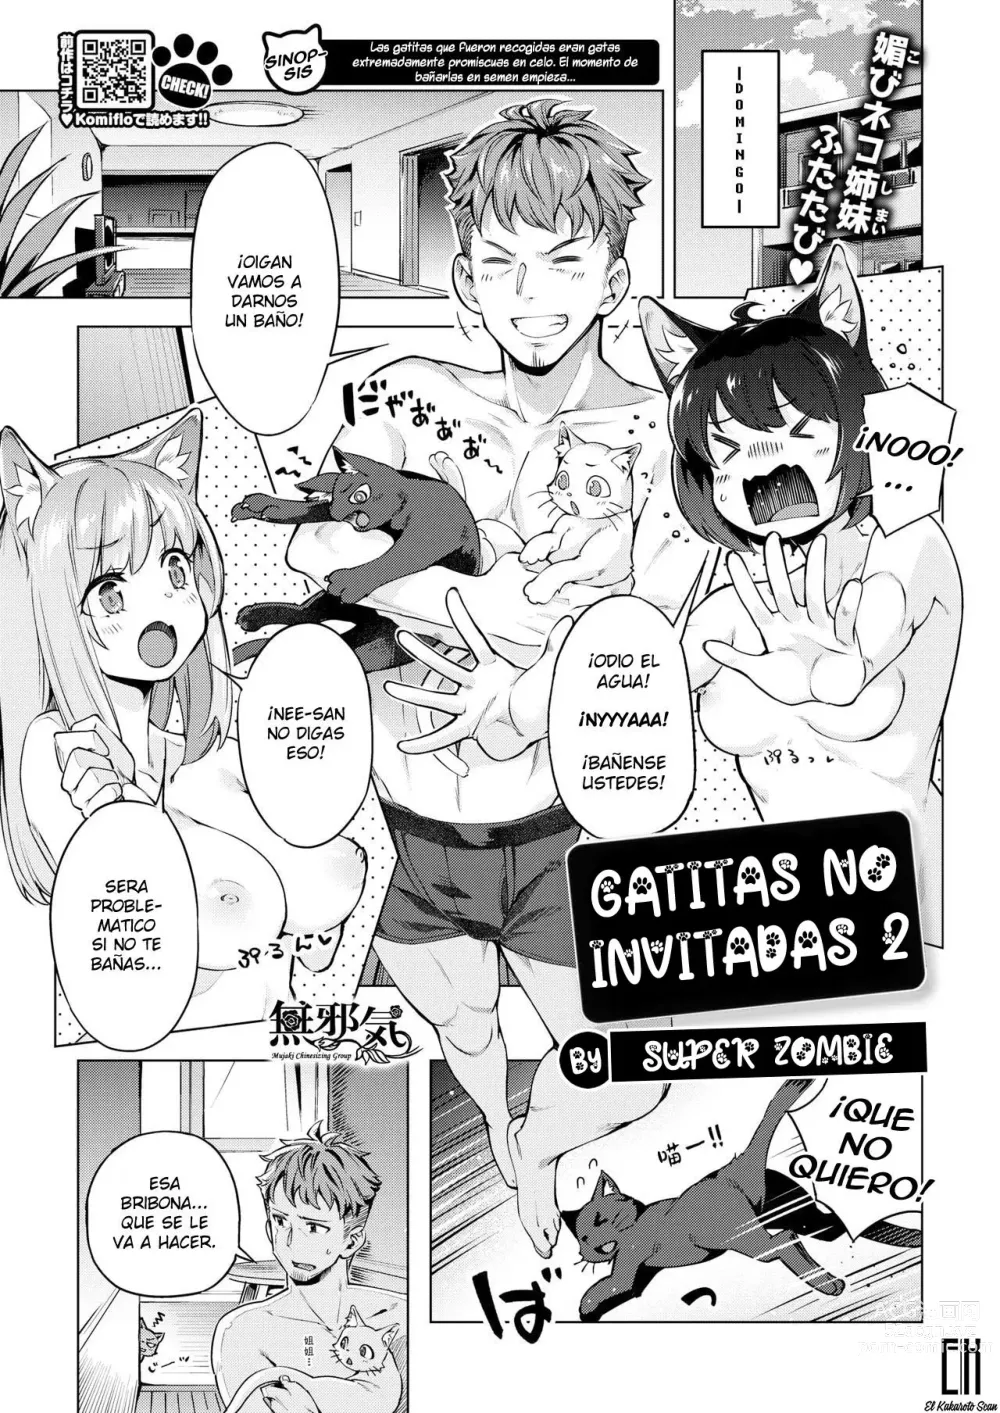 Page 1 of manga Gatitas no invitadas  2